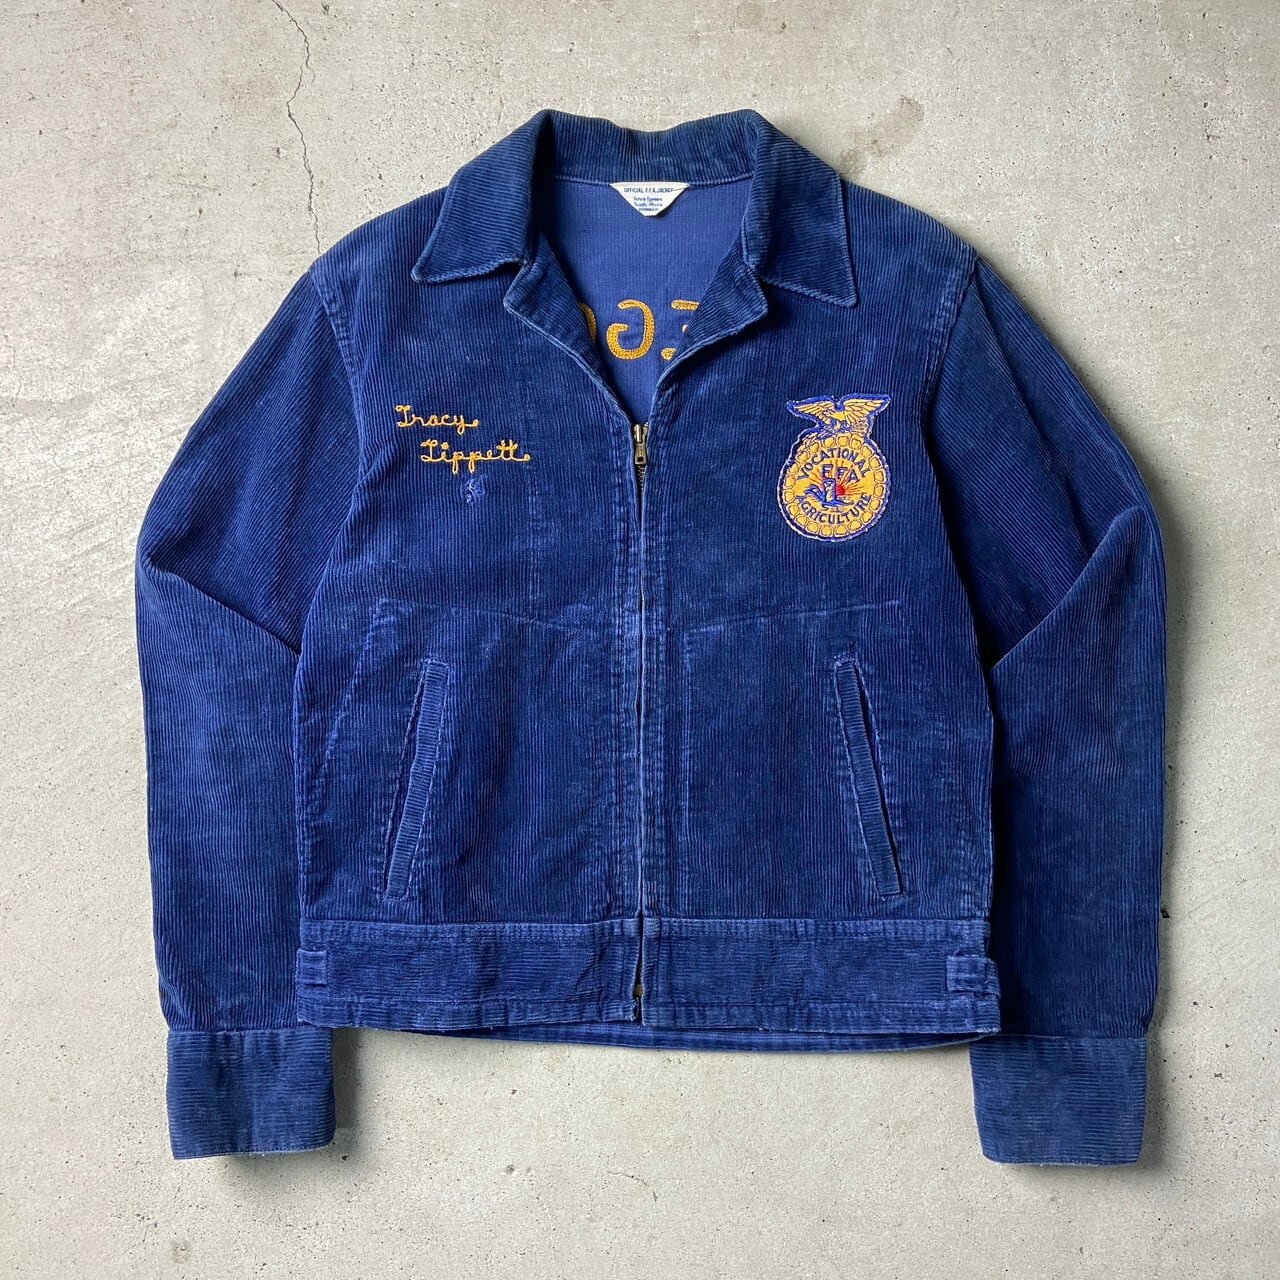 60〜70年代 FFA アメリカ国立農業学校 ファーマーズジャケット メンズ